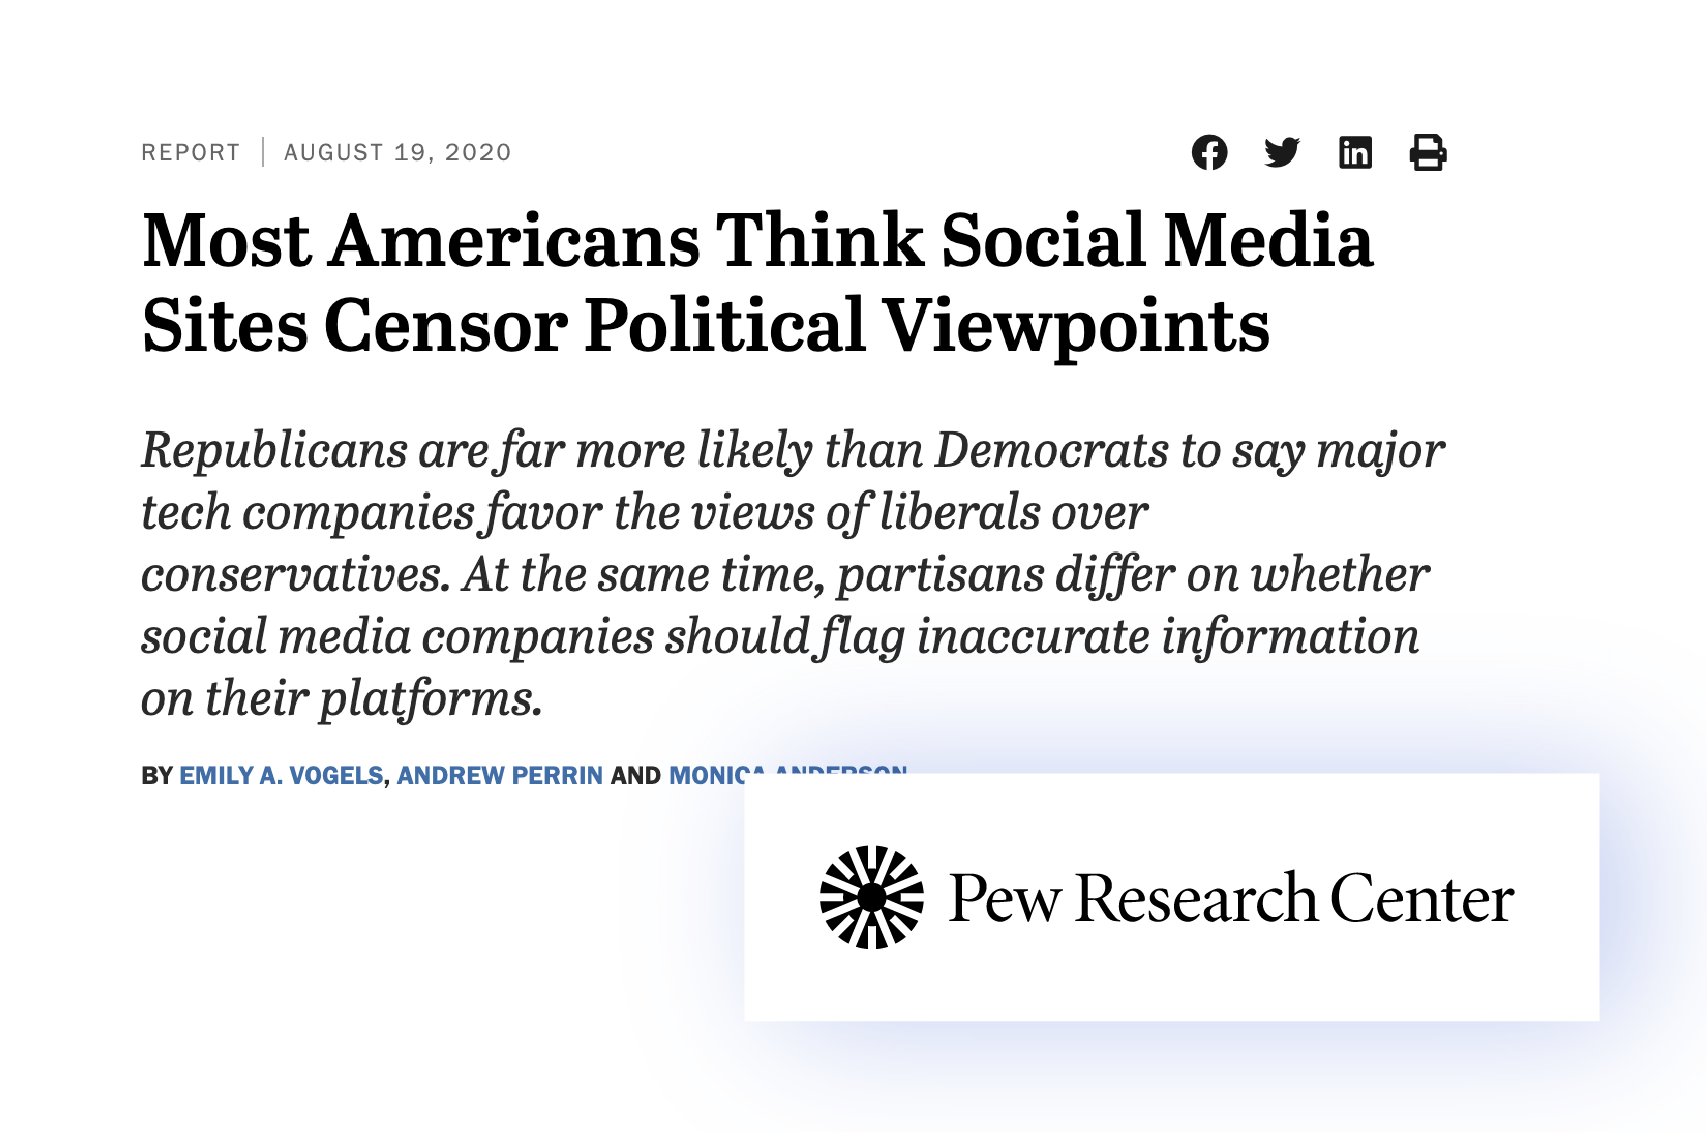 “皮尤研究中心在2020年6月的一项调研显示：约四分之三的成年美国人认为社交媒体平台很有可能（37%）或比较有可能（36%）故意删除了不符合平台价值观的政治观点。”